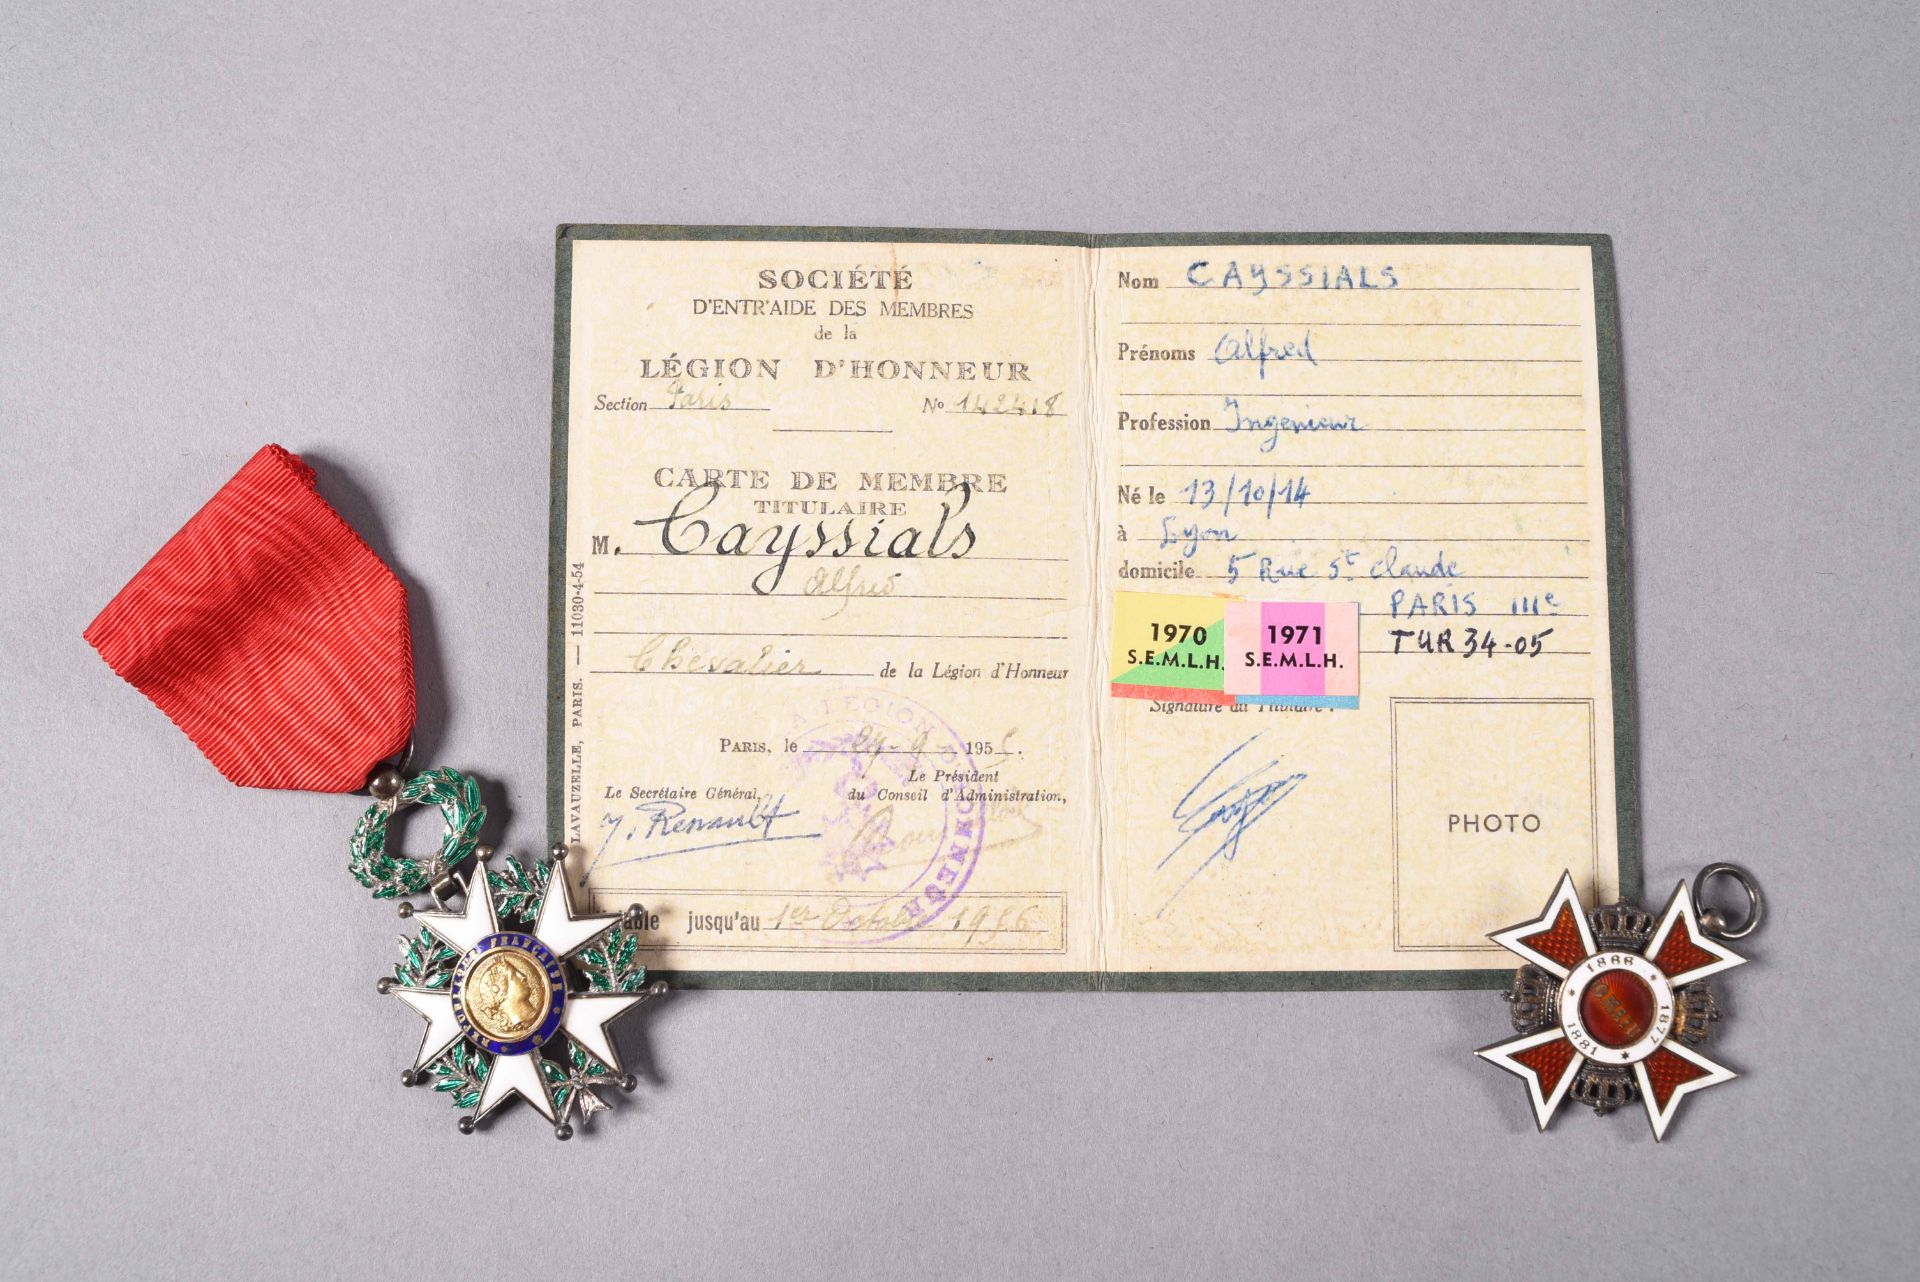 FRANCE et ROUMANIE. Insigne de chevalier de la Légion d'honneur, en argent 800 millièmes, émail et - Image 2 of 2